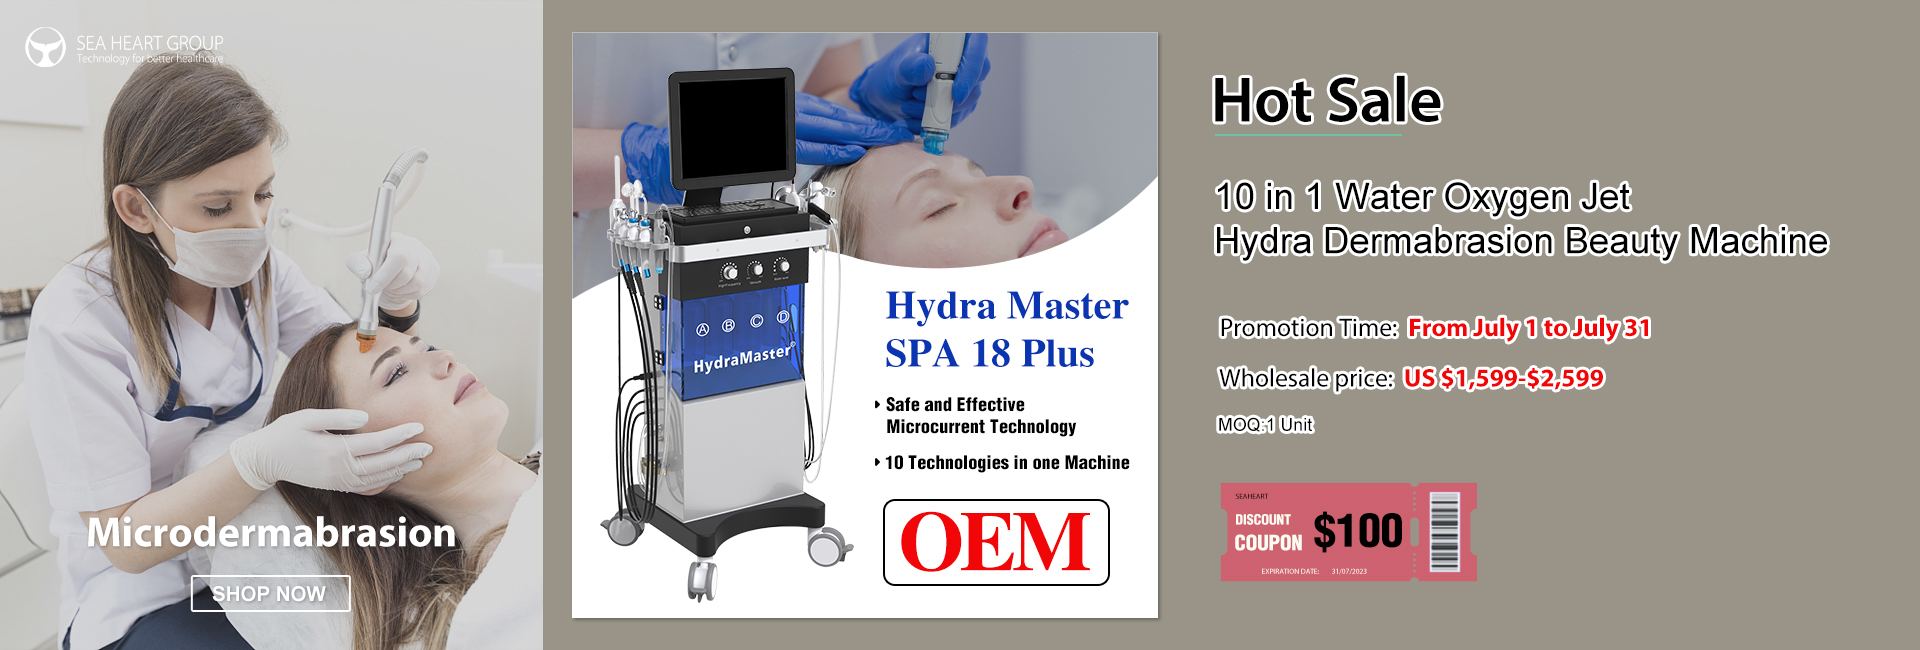 hydra dermabrasion machine